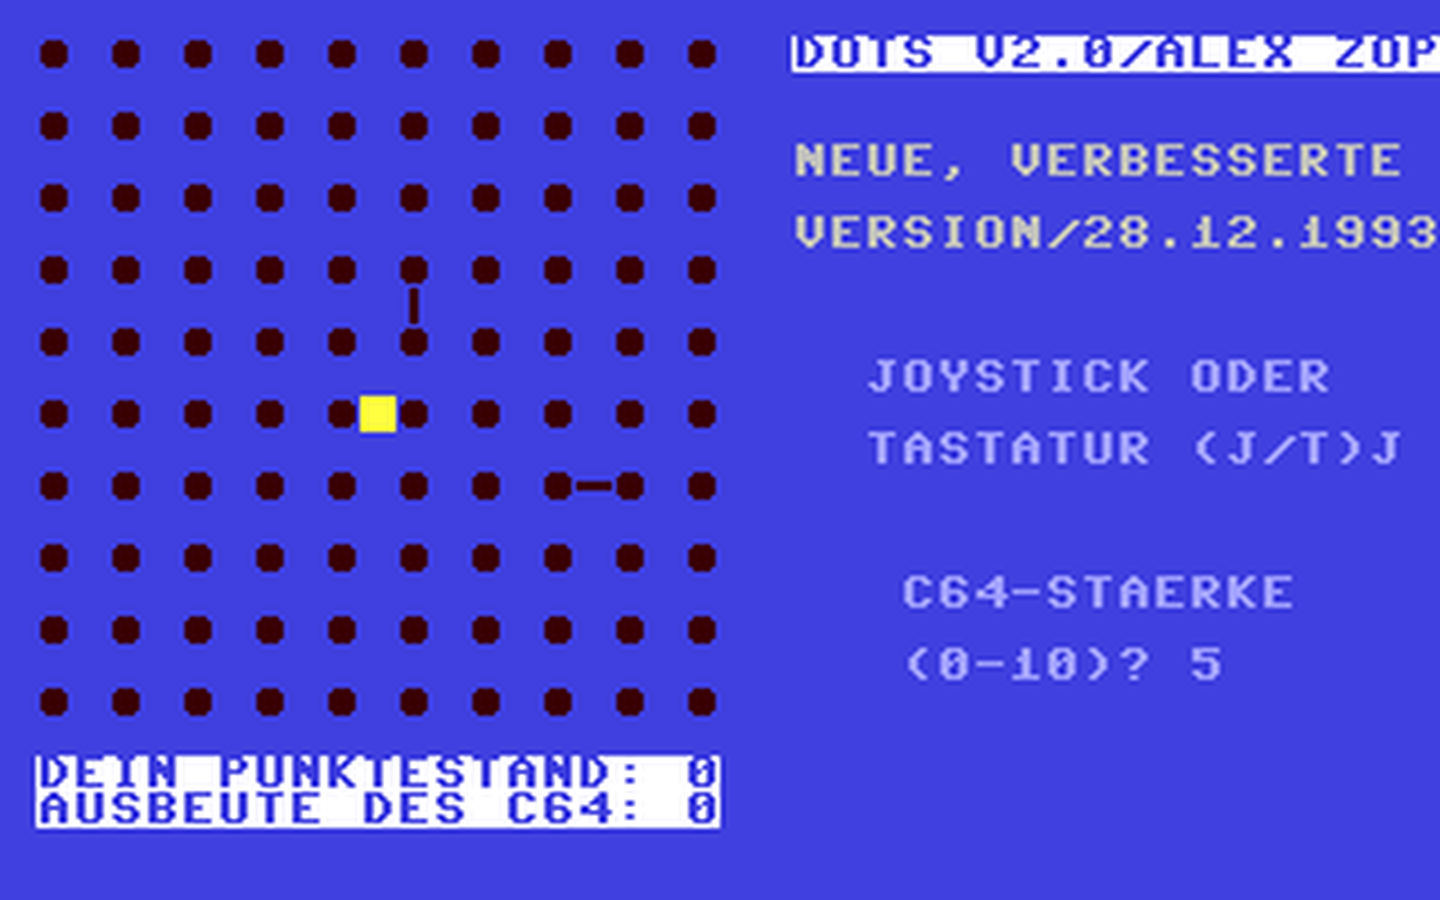 C64 GameBase Dots_v2.0 1993